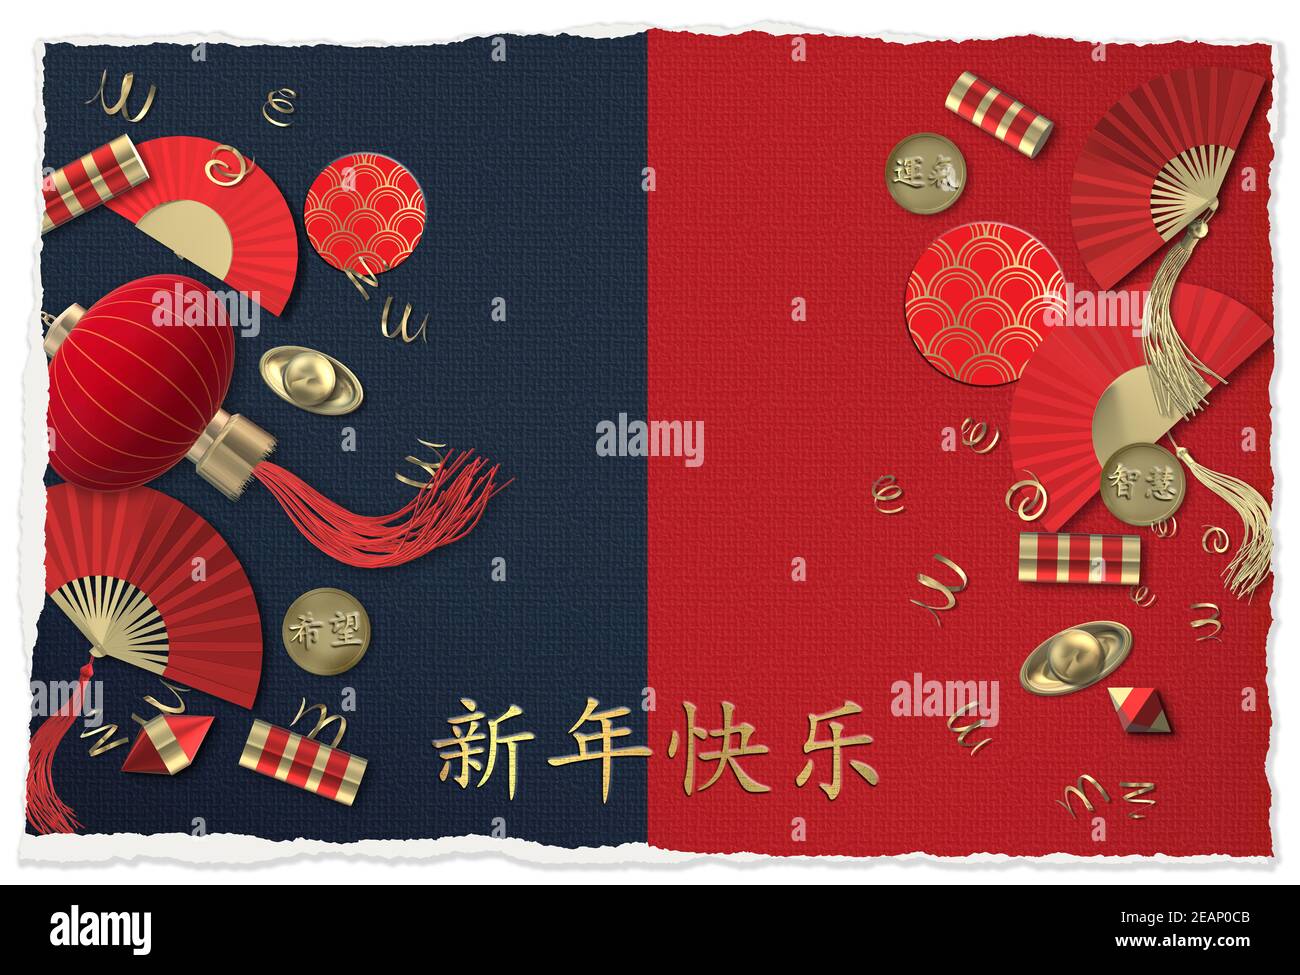 Chinesisches Neujahr. Laterne, Fans, Cracker. Orientalisch-asiatische Symbole auf rot-blau. Glückliche Umschläge Münzen mit Text Chinesische Übersetzung Glück, Hoffnung, Weisheit. Stockfoto